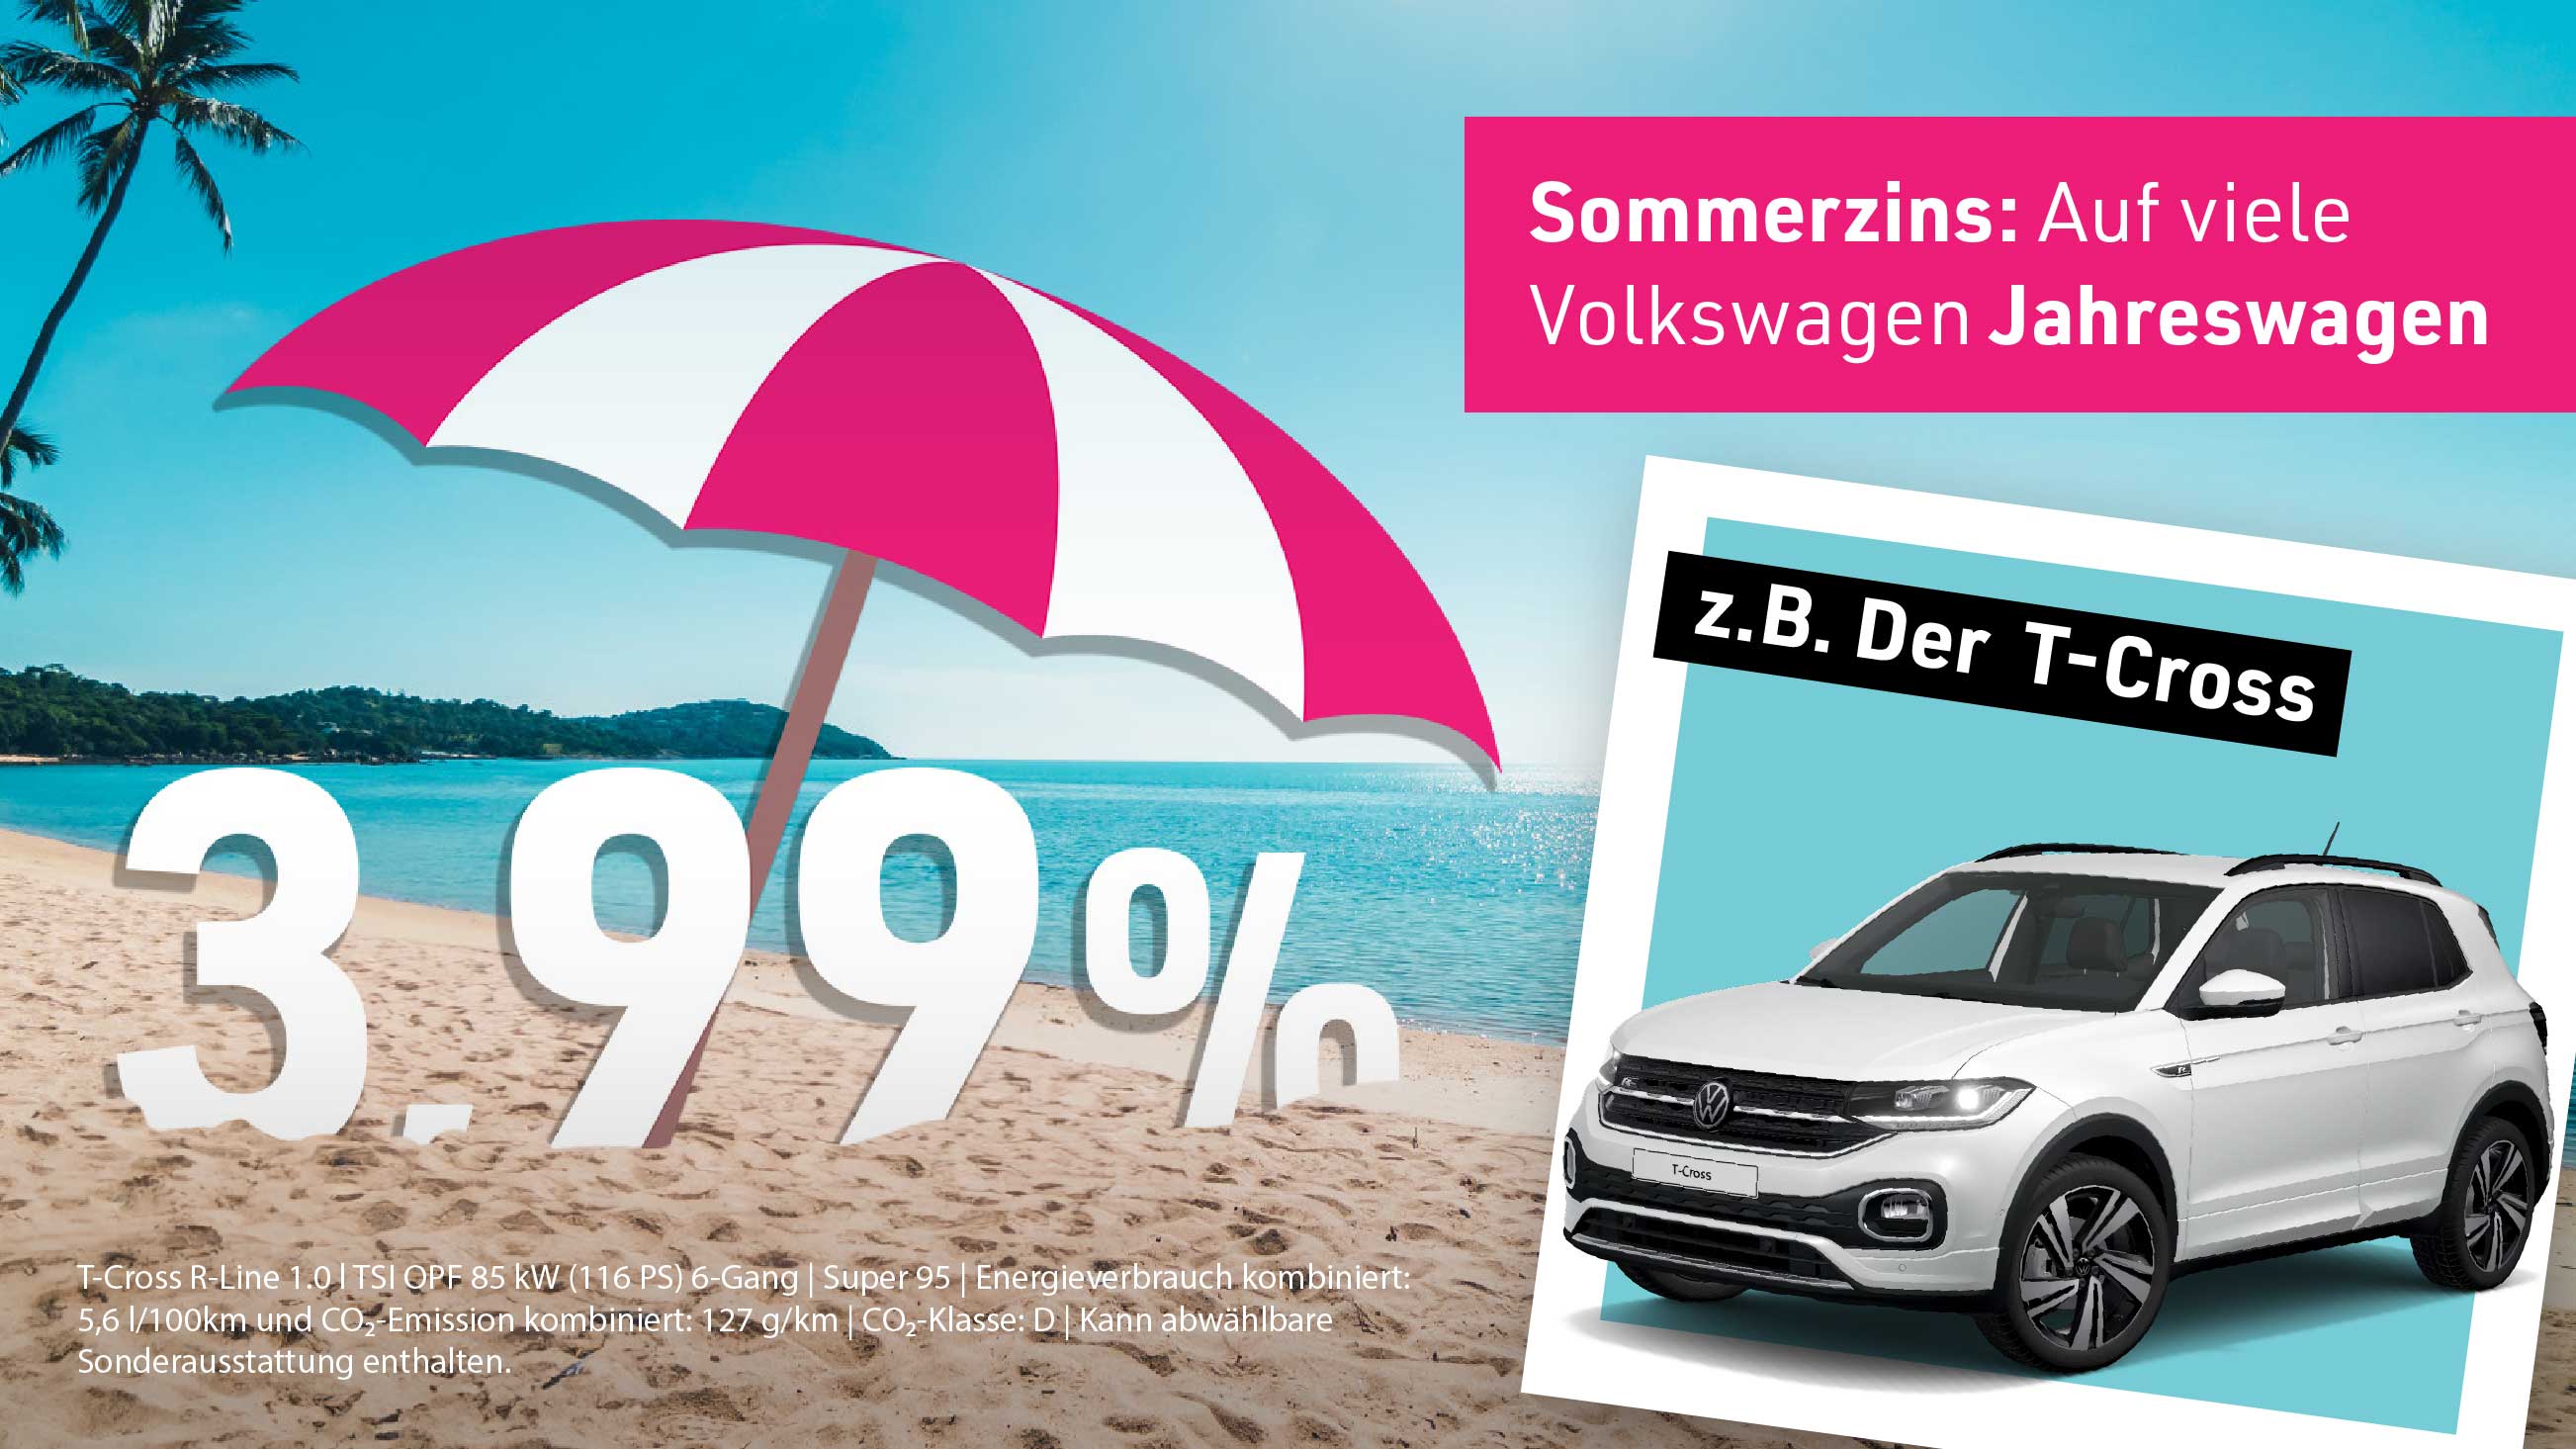 Sommeraktion: 3,99 % auf viele junge Volkswagen Gebrauchtwagen